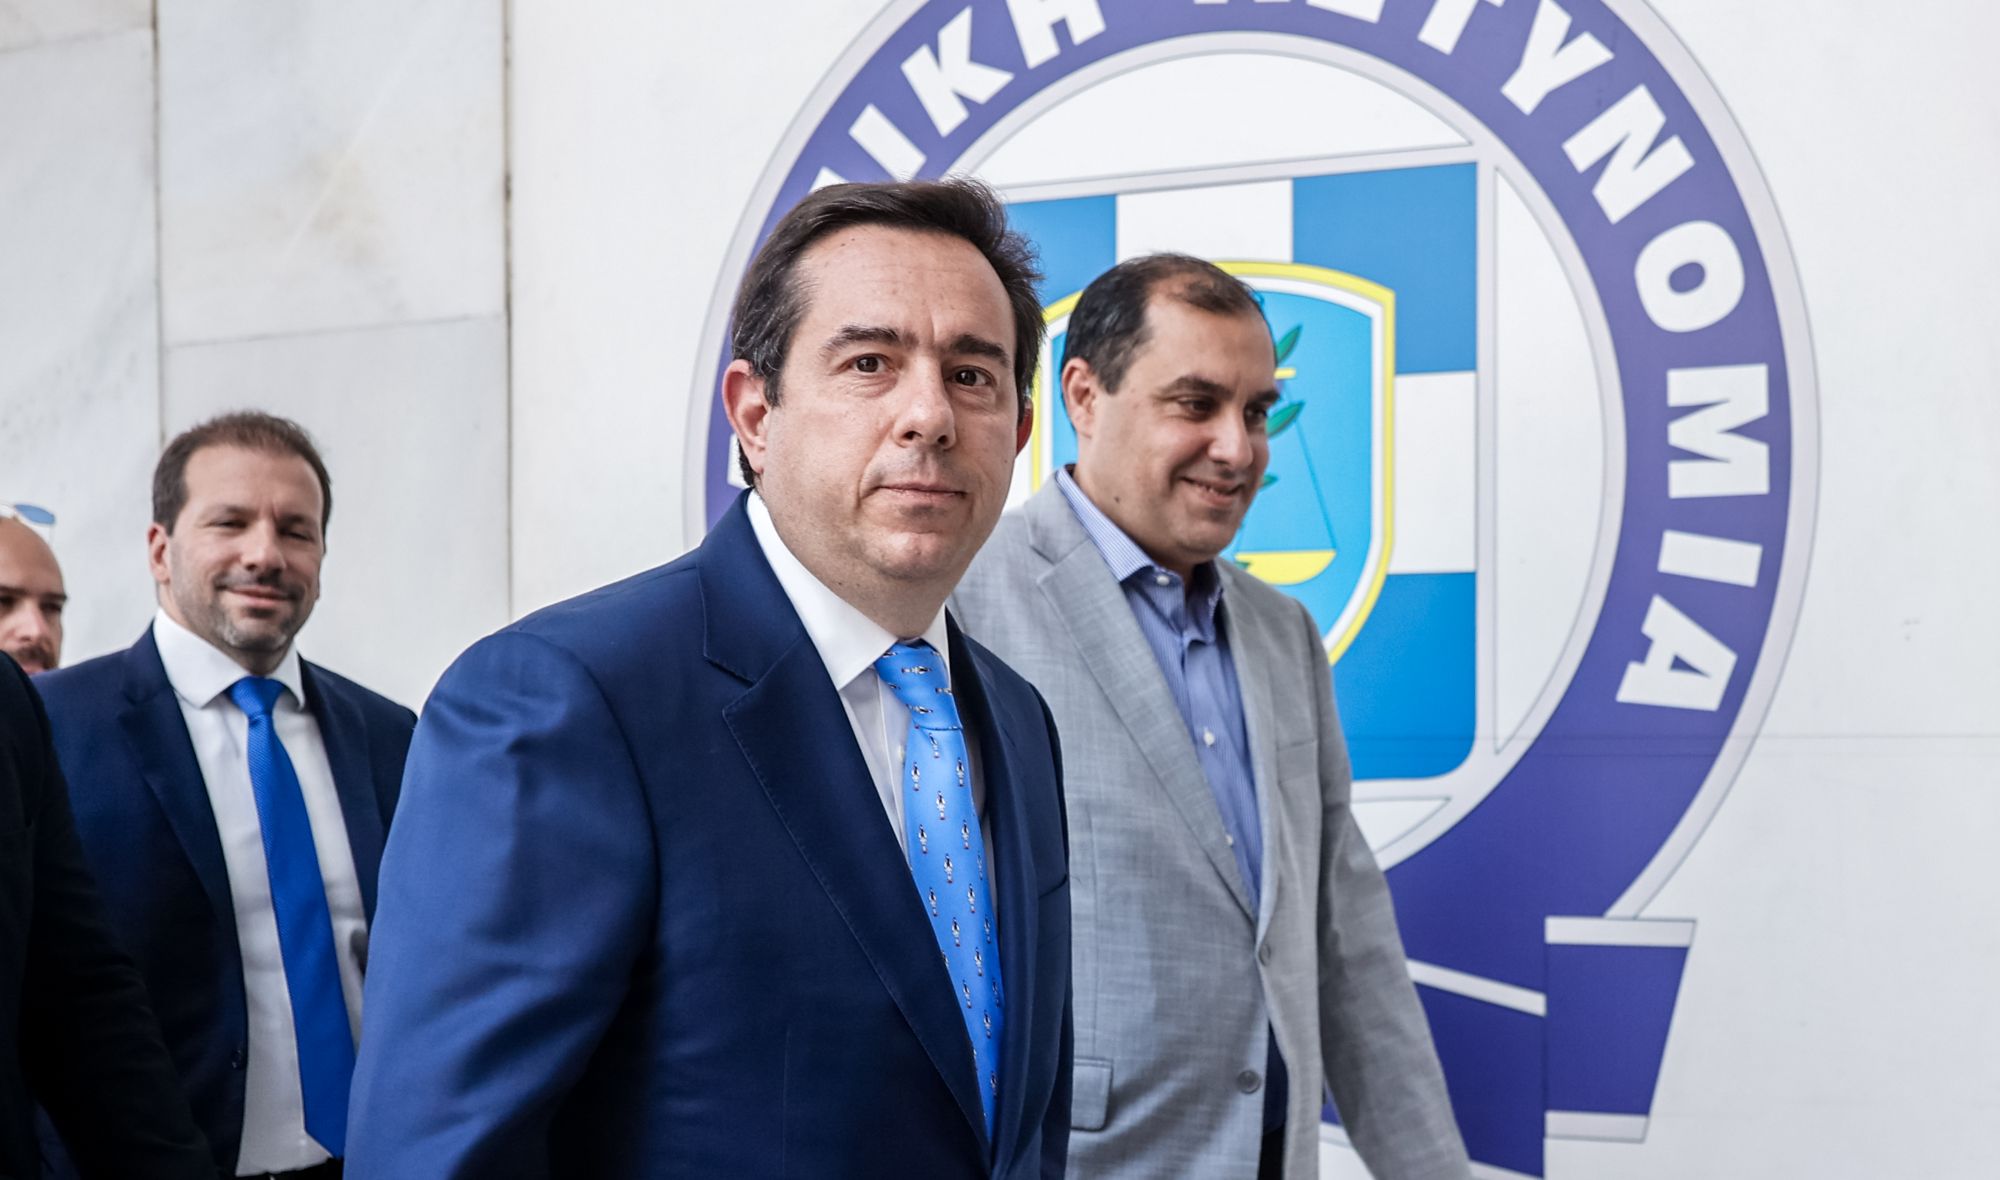 Ν.Μηταράκης: Πρώτη επίσκεψη του νέου υπουργού Προστασίας του Πολίτη στη ΓΑΔΑ